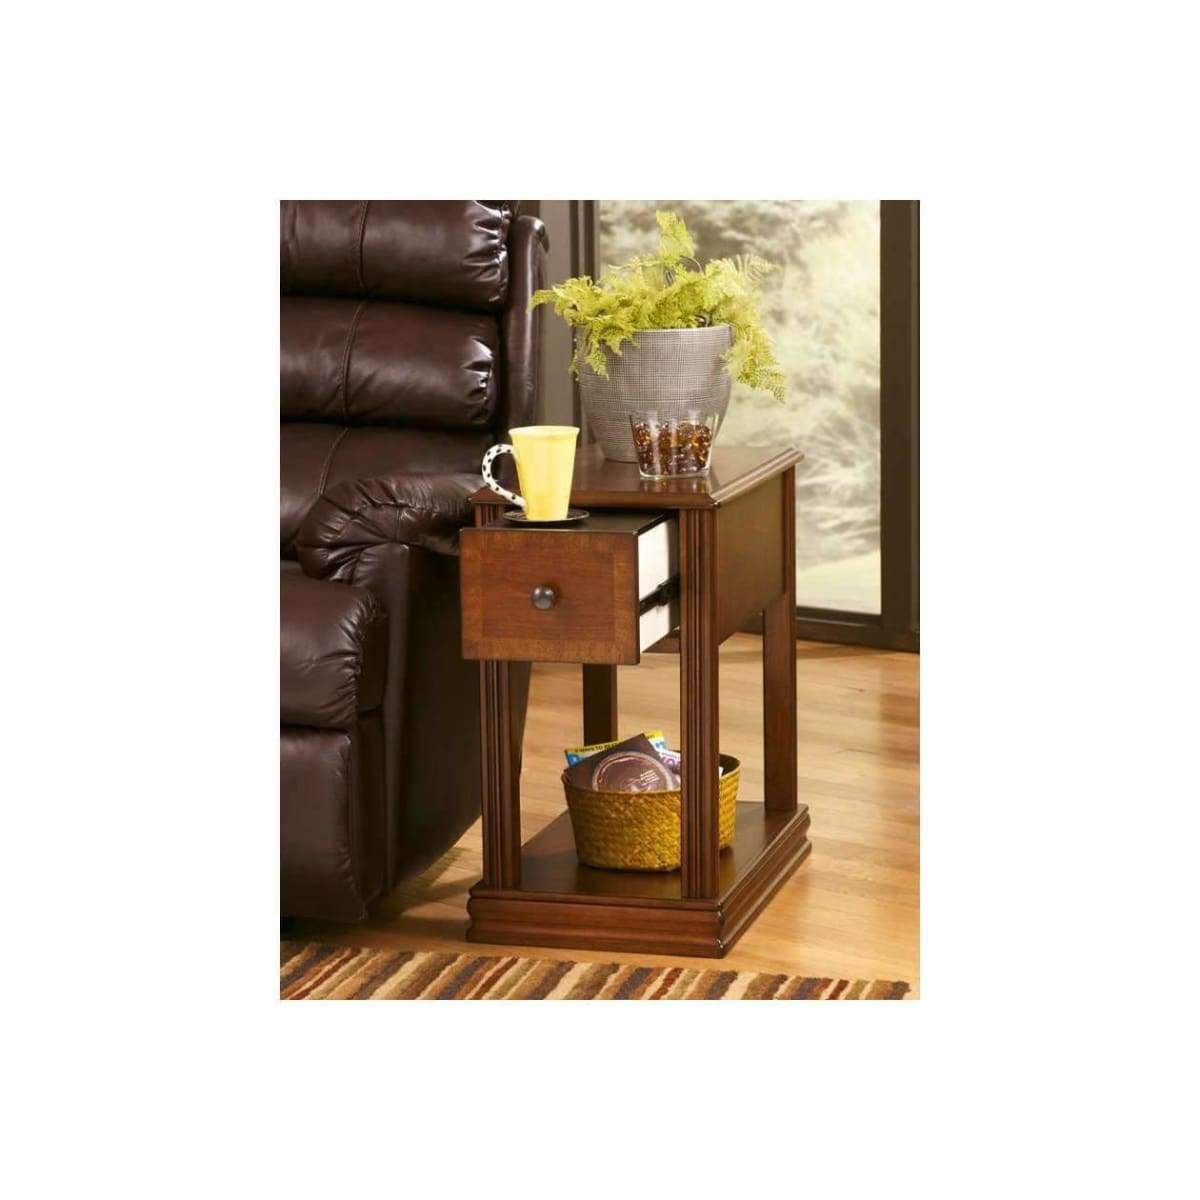 Breegin Medium Brown Chairside End Table - END TABLE/SIDE TABLE